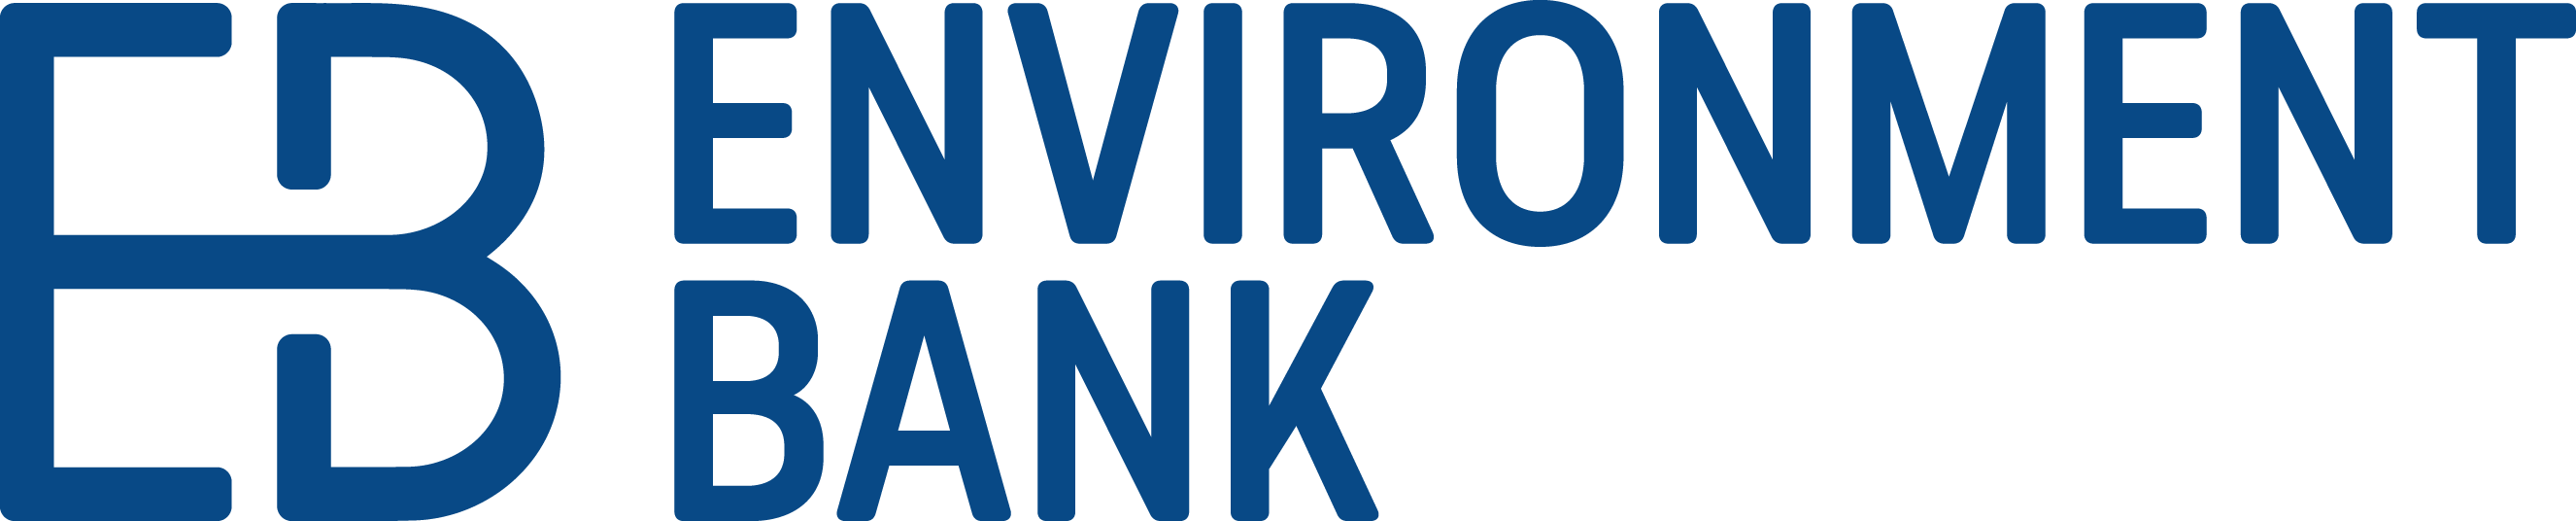 Environment bank logo